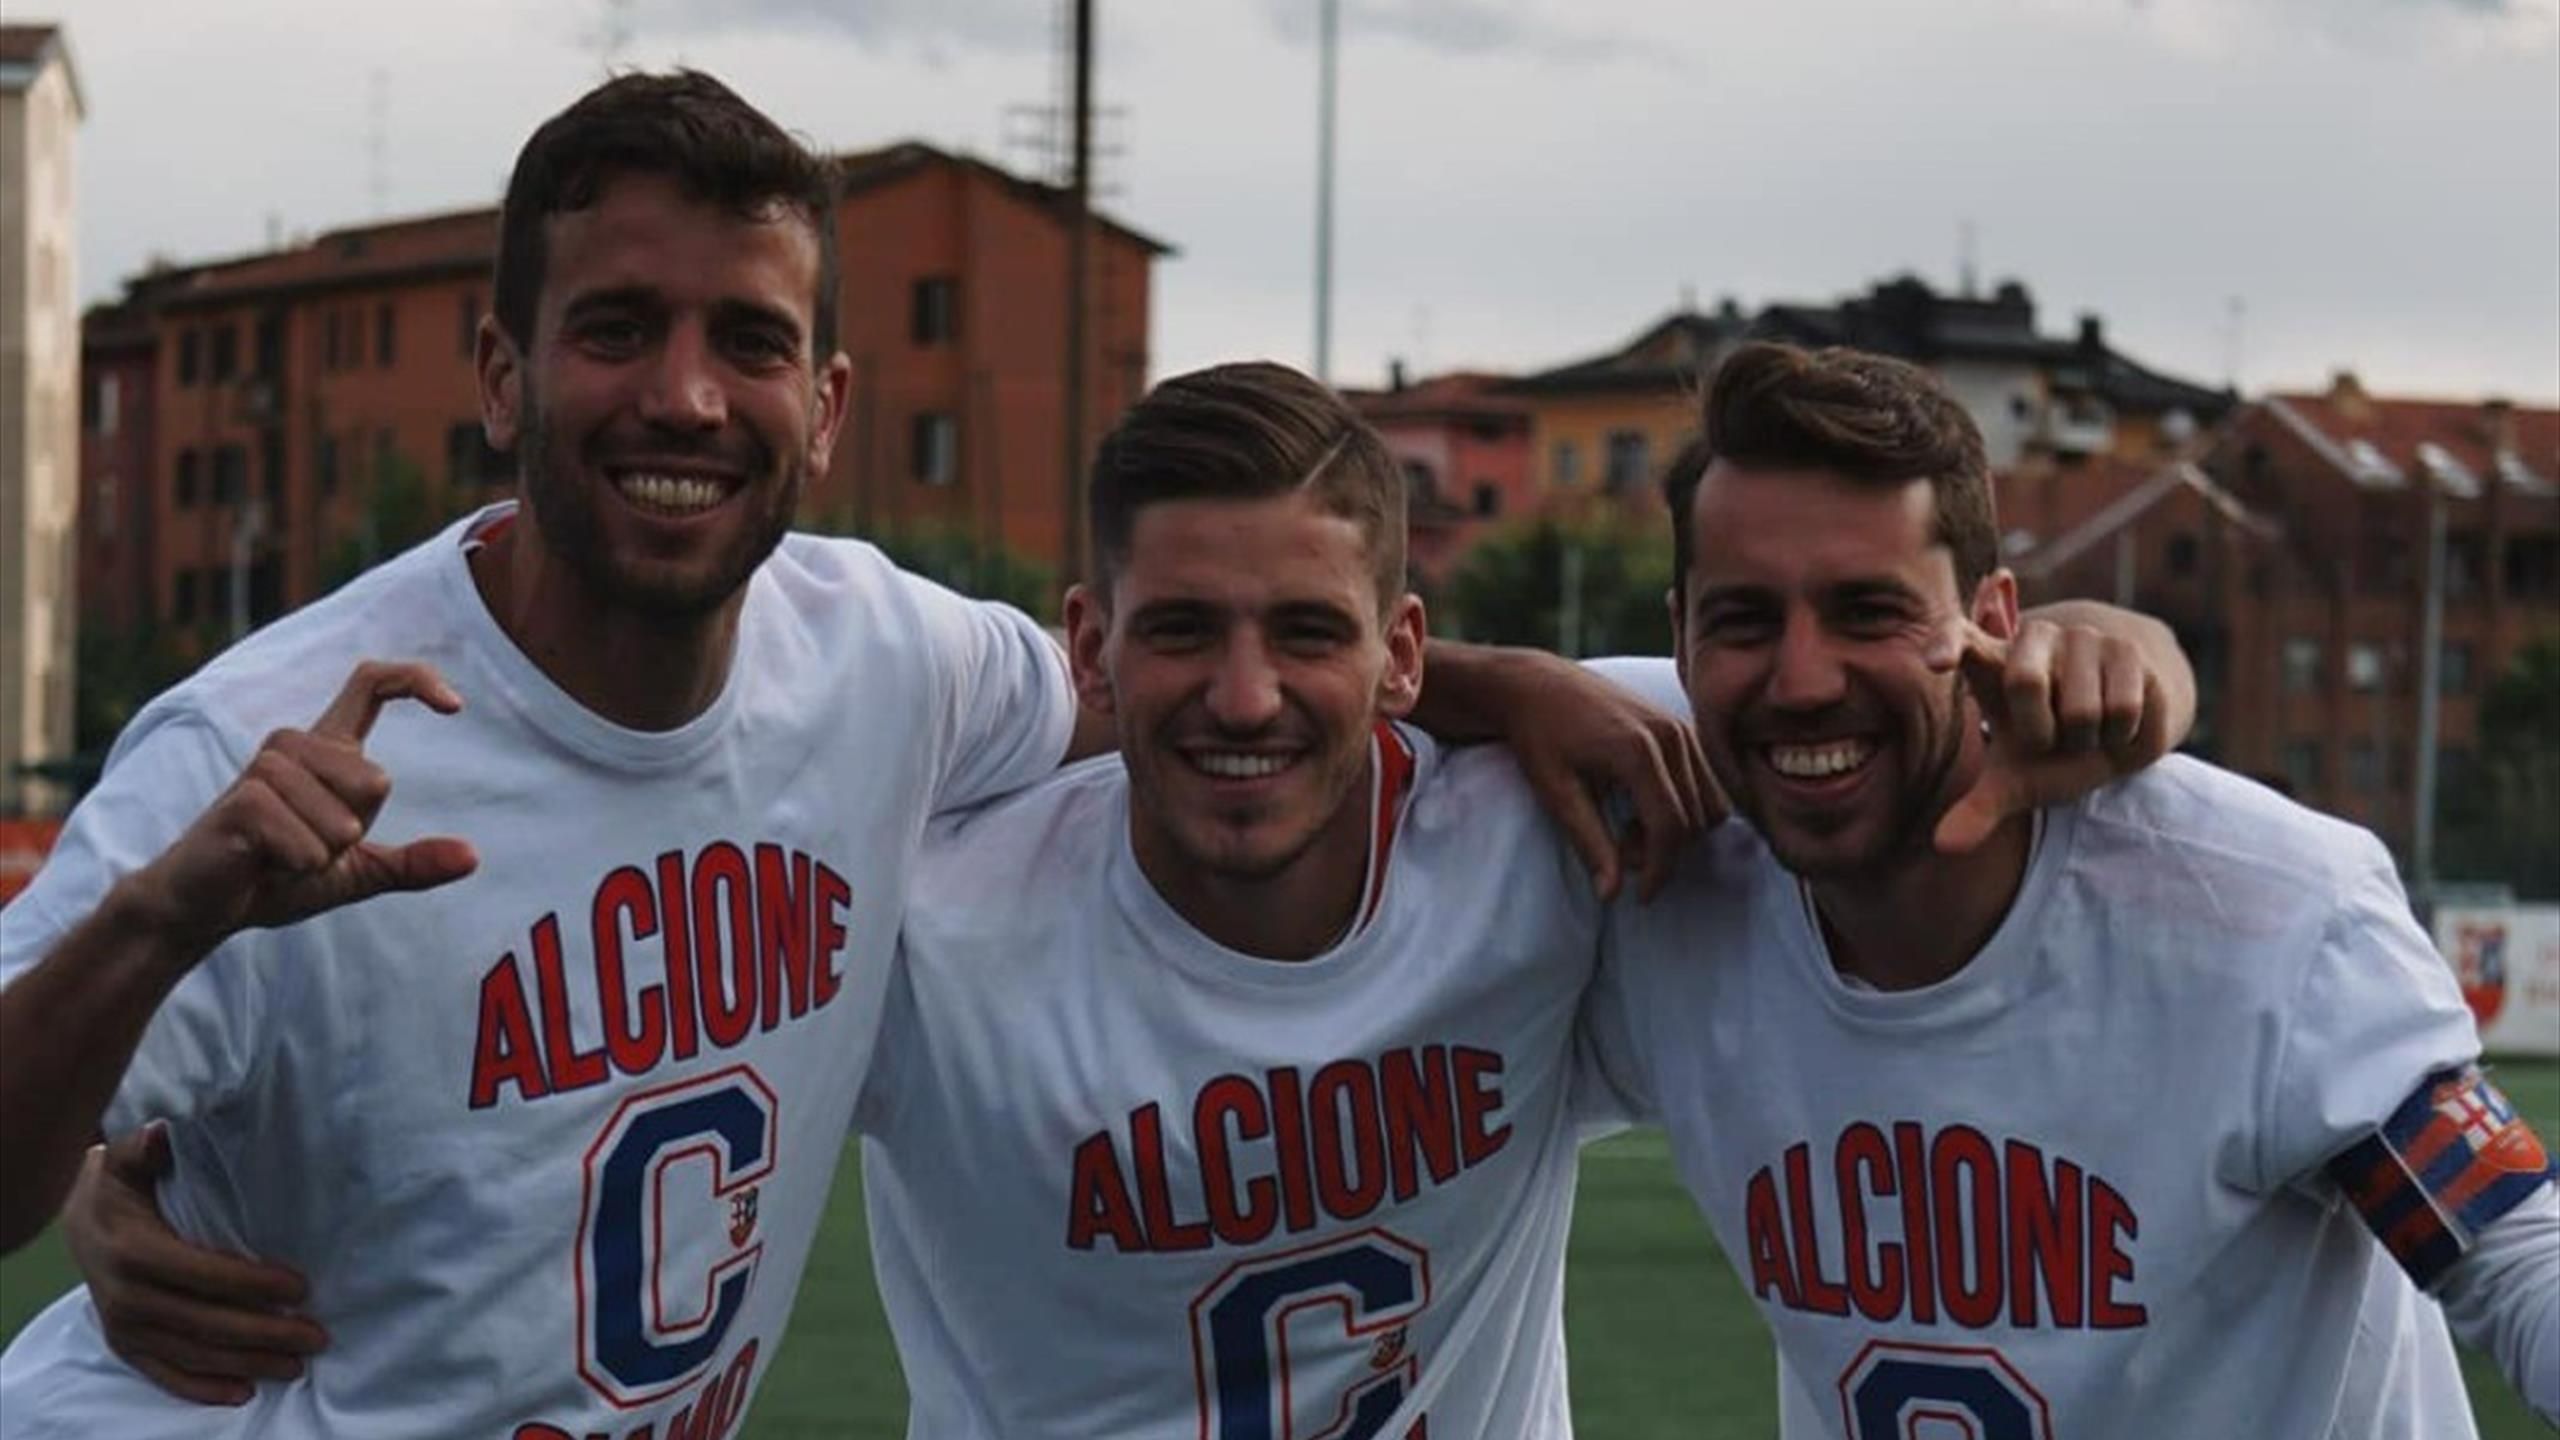 Milano ha tre squadre tra i professionisti: Alcione in Serie C, dove giocherà